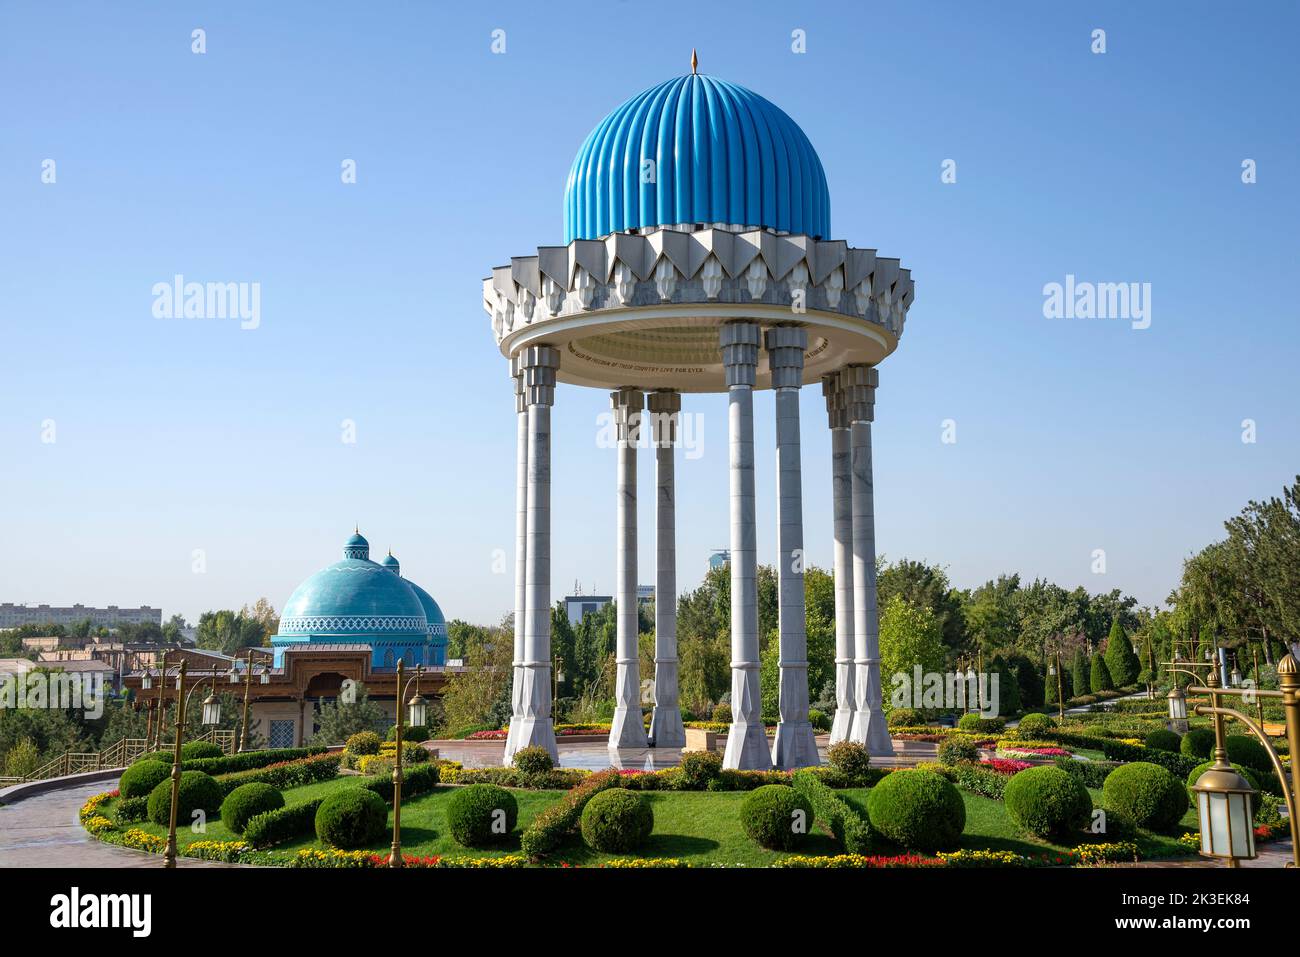 TACHKENT, OUZBÉKISTAN - O4 SEPTEMBRE 2022 : rotonde dans le complexe commémoratif 'en mémoire des victimes de la répression'. Tachkent, Ouzbékistan Banque D'Images